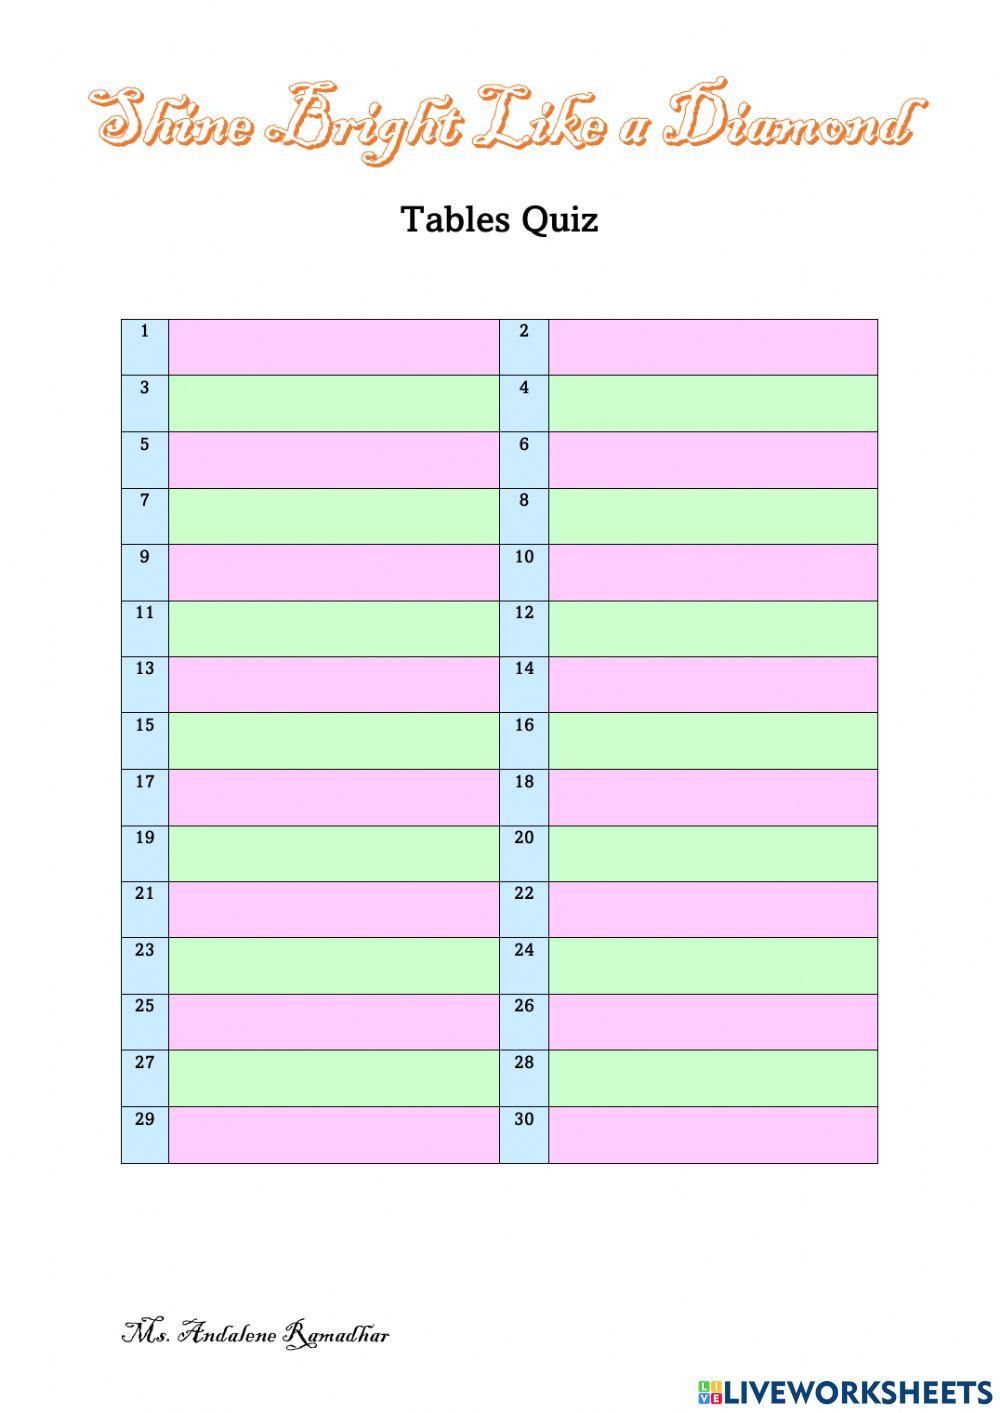 Tables quiz